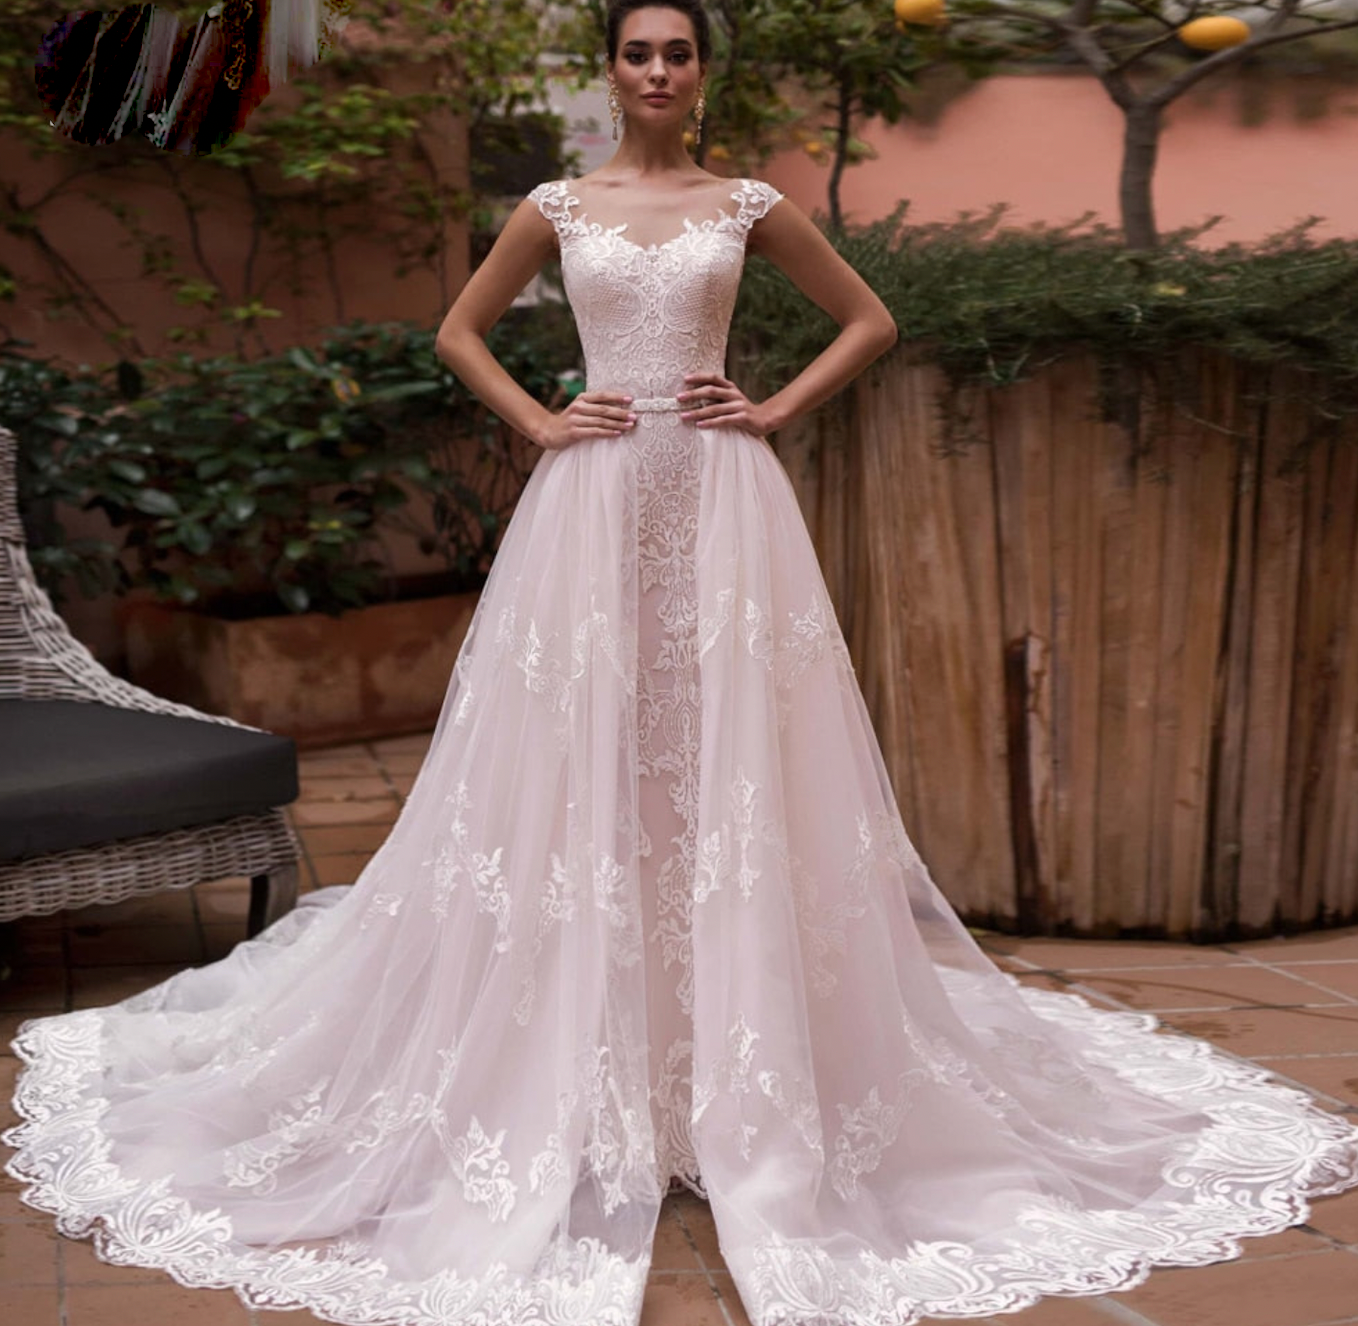 Disney Fairytale Weddings | Fantasy Bridal - 137011 | Fantasy Bridal